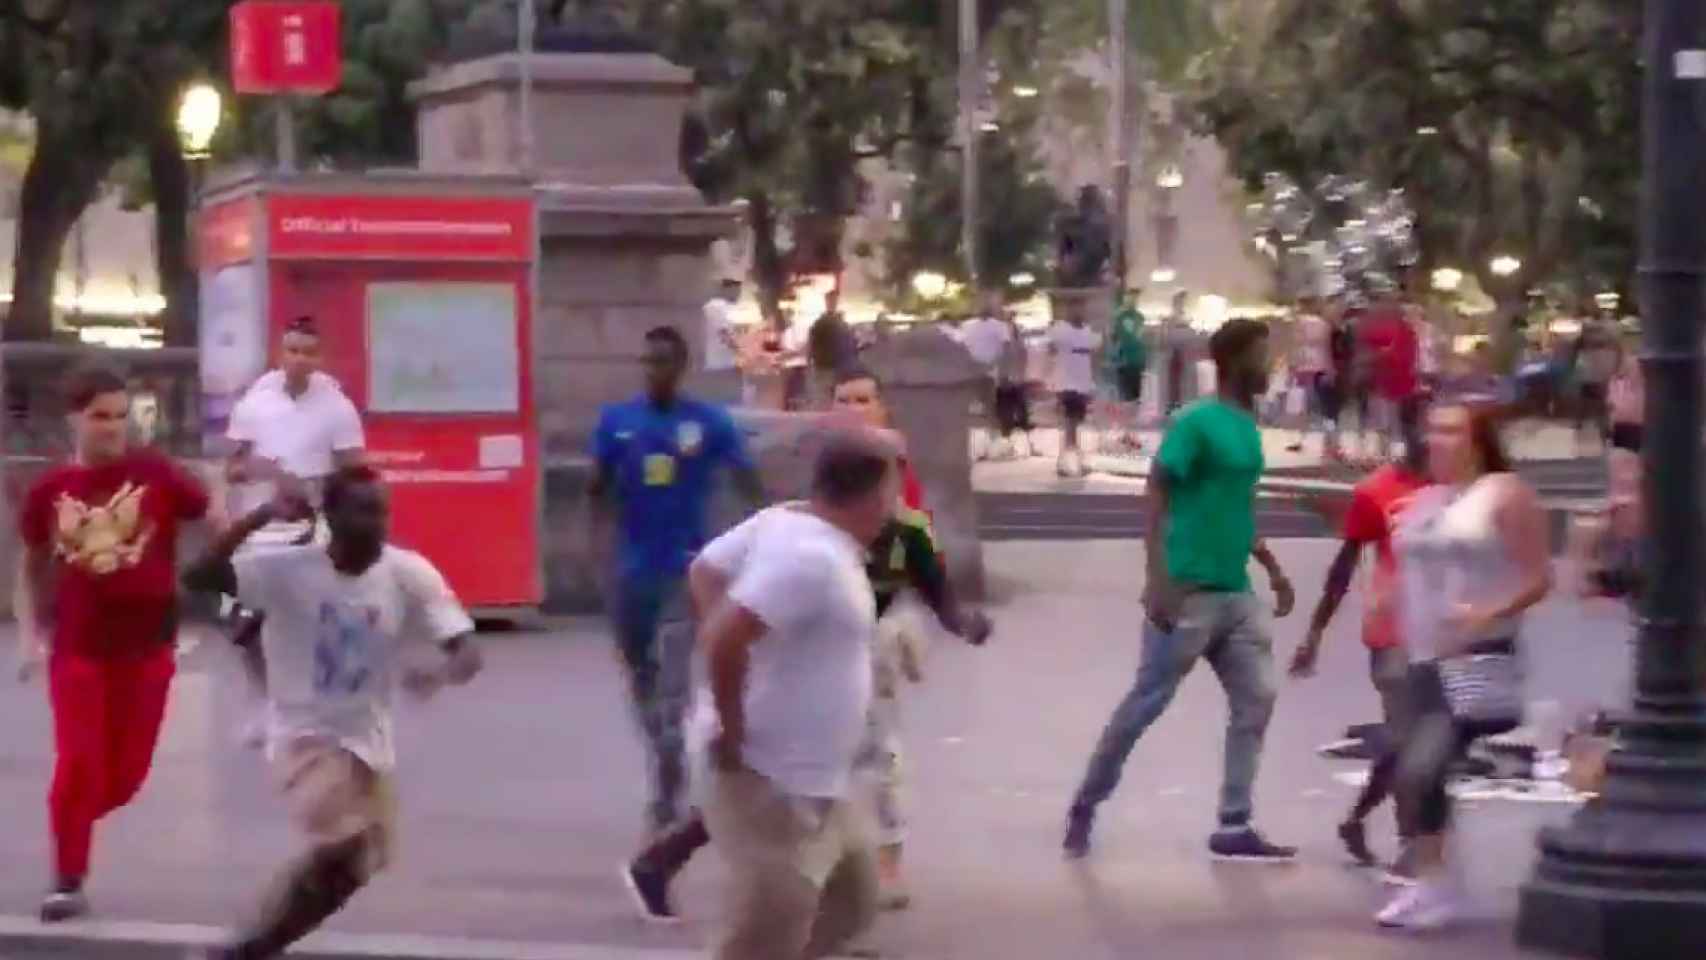 Un mantero, con camiseta blanca y un cinturón, persigue al turista en la plaza de Catalunya / TWITTER @AKur0mu